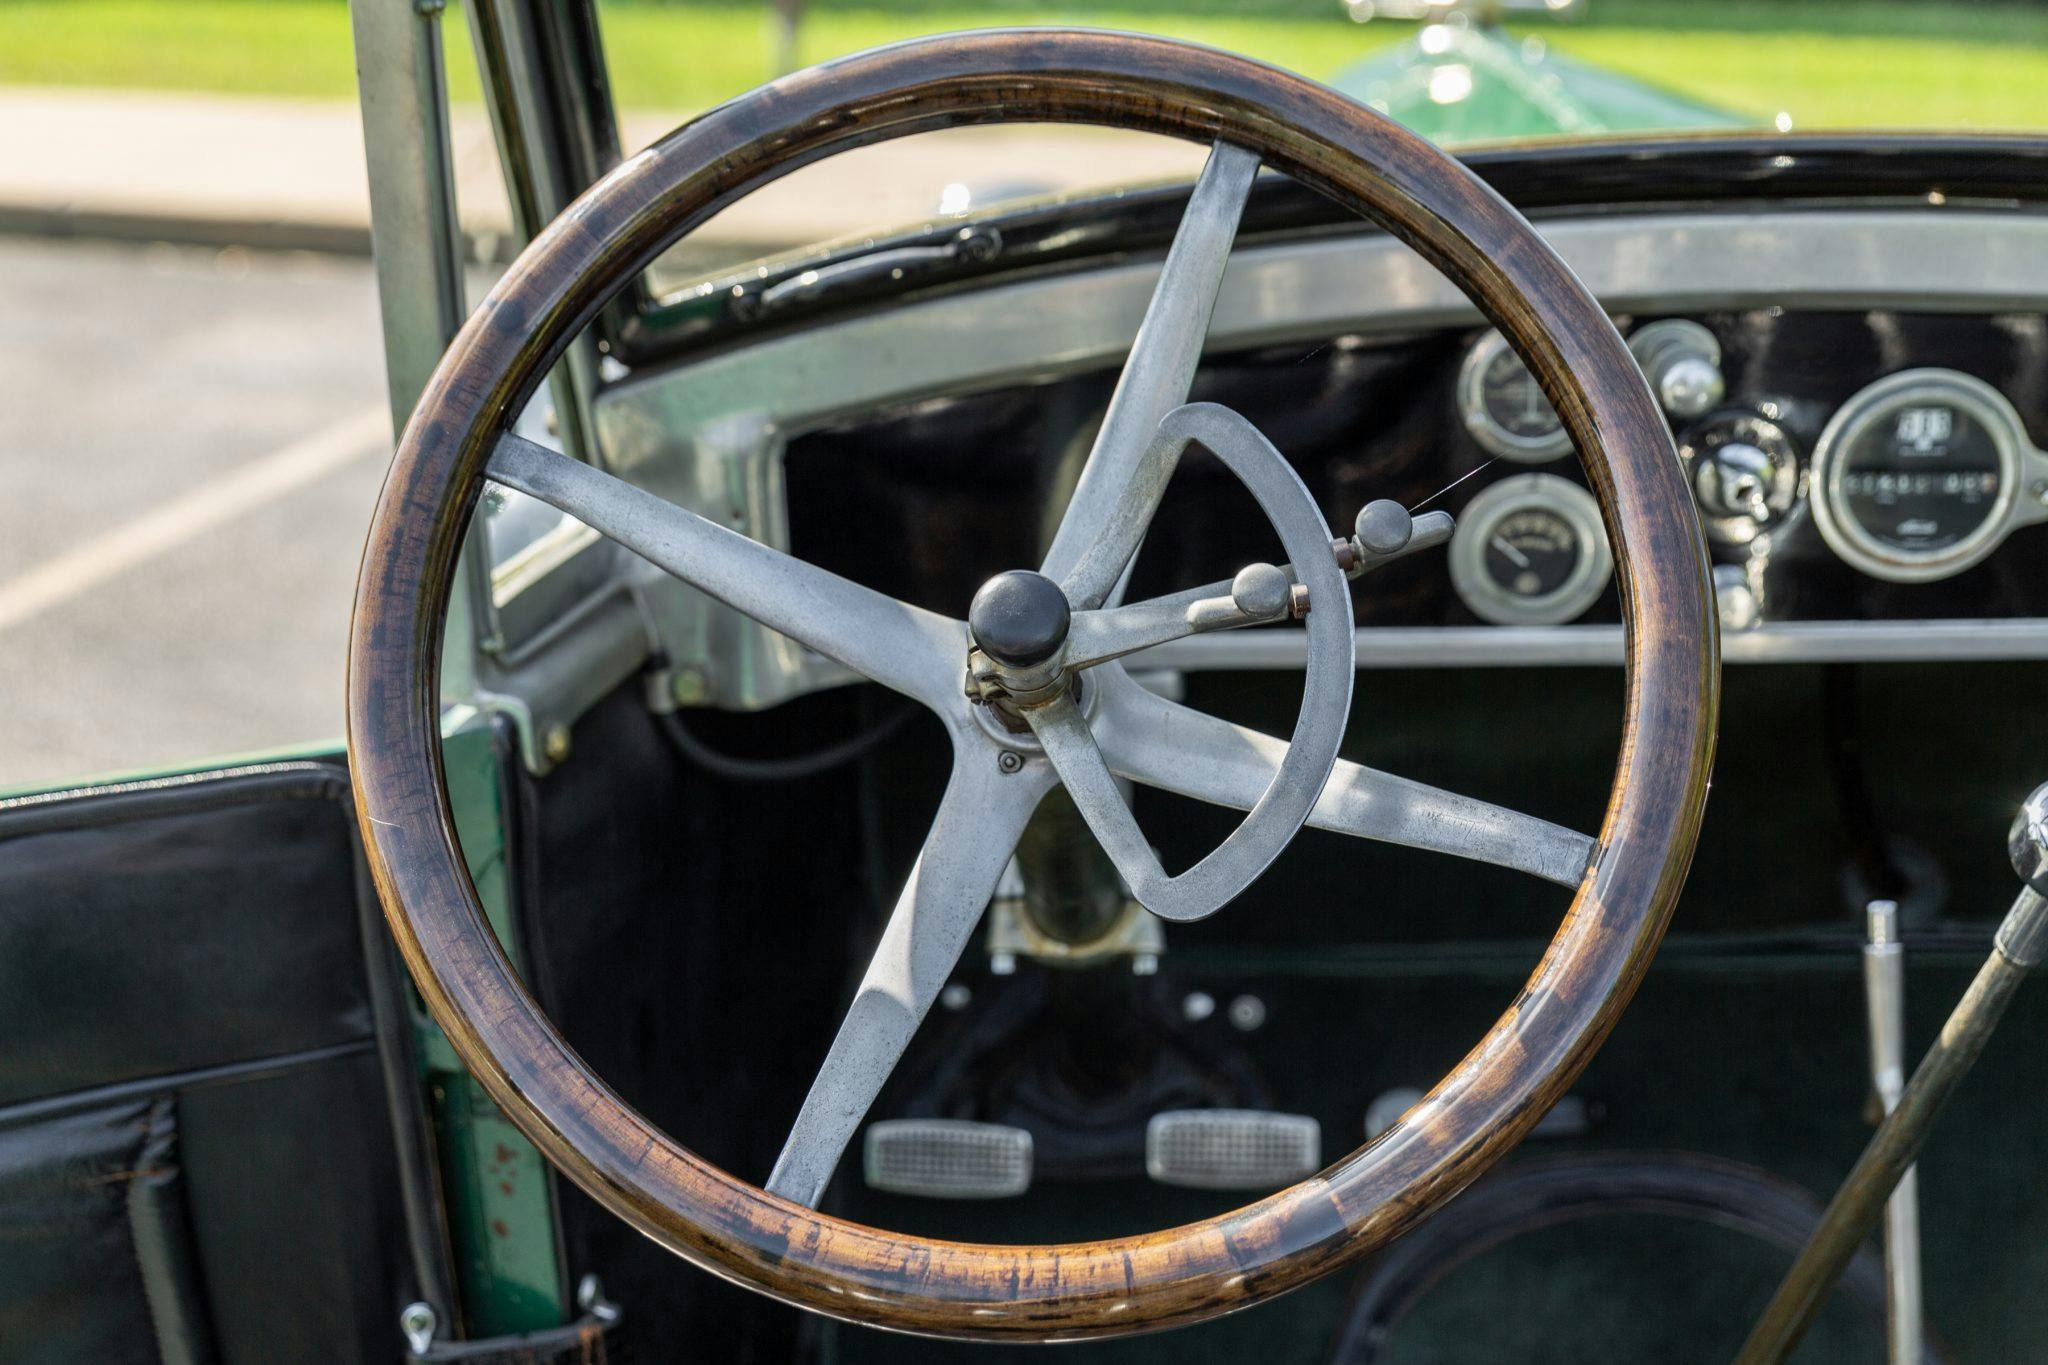 1921 Paige Vintage car interior steering wheel detail